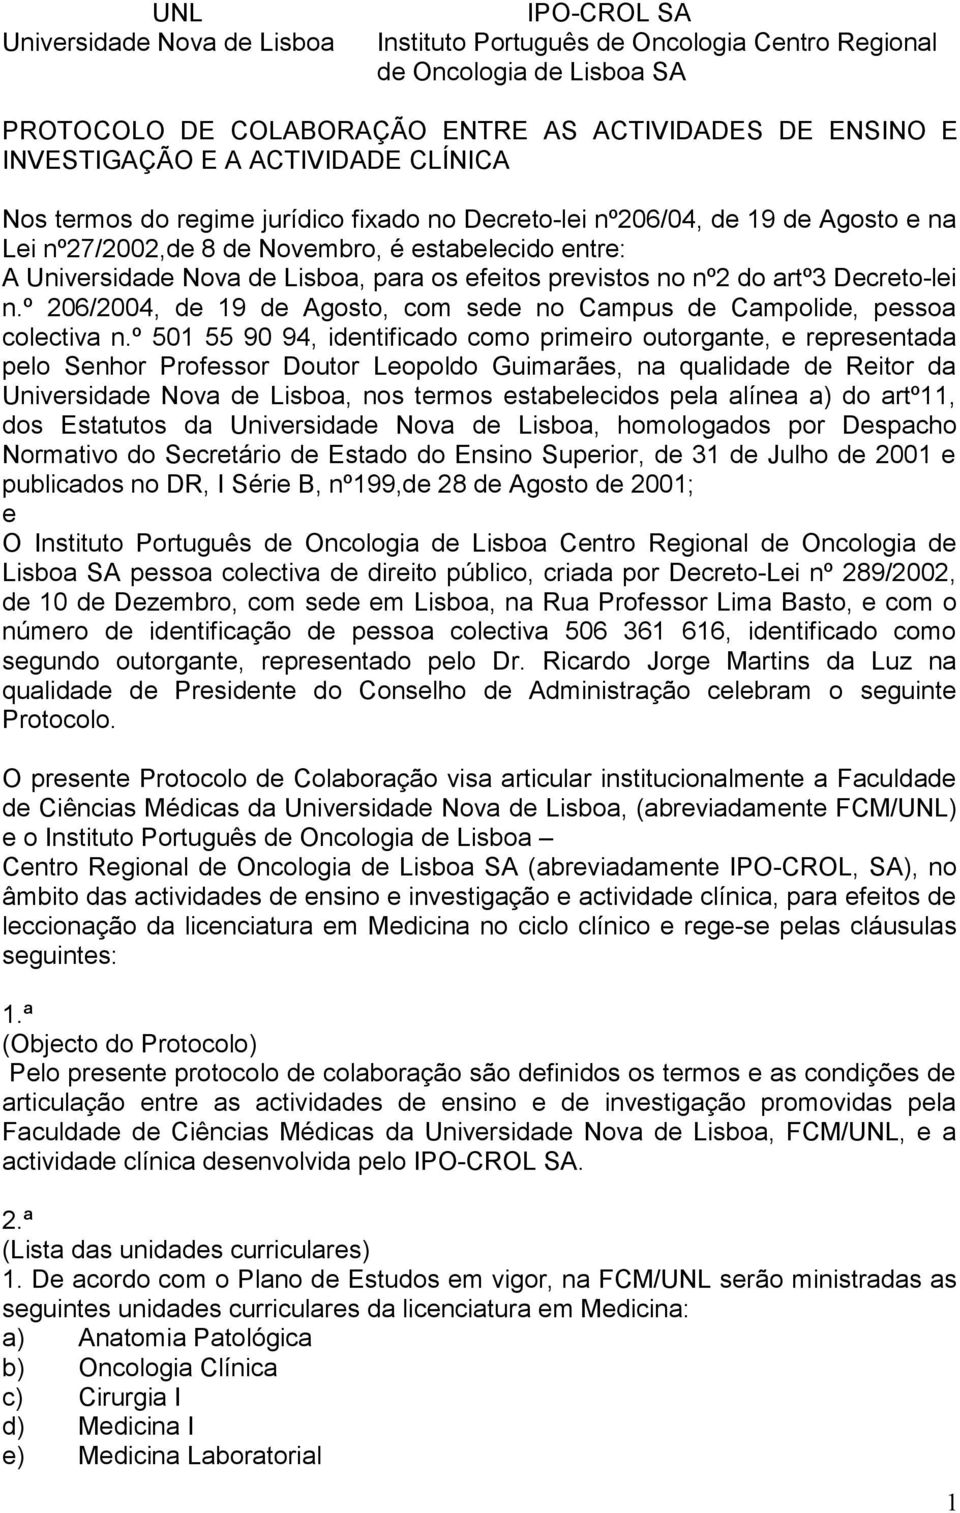 efeitos previstos no nº2 do artº3 Decreto-lei n.º 206/2004, de 19 de Agosto, com sede no Campus de Campolide, pessoa colectiva n.